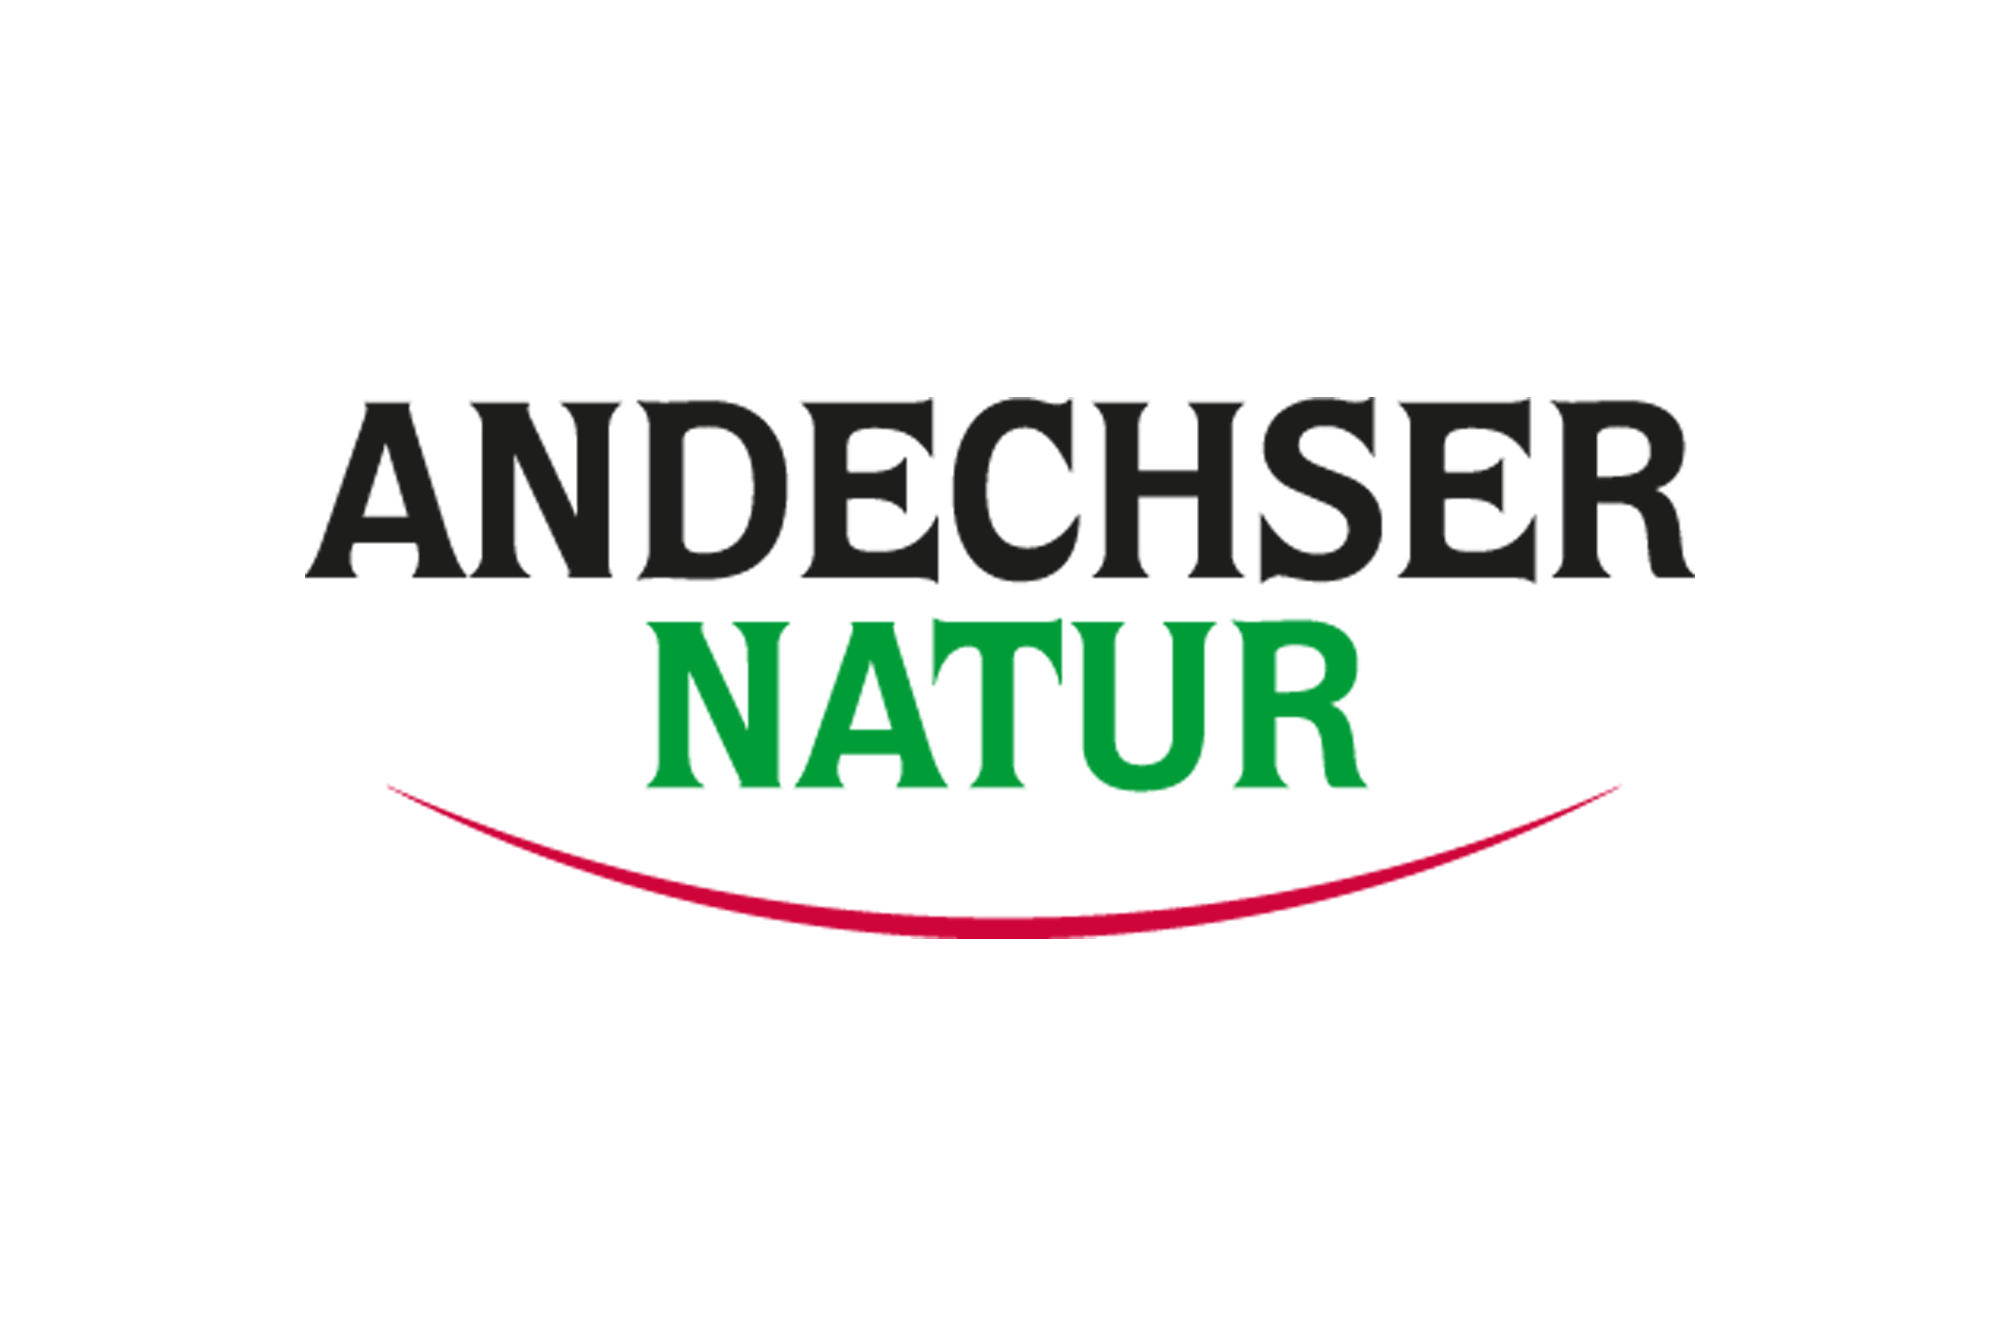 Andechser Natur Handelsblatt Marke des Jahres 2020